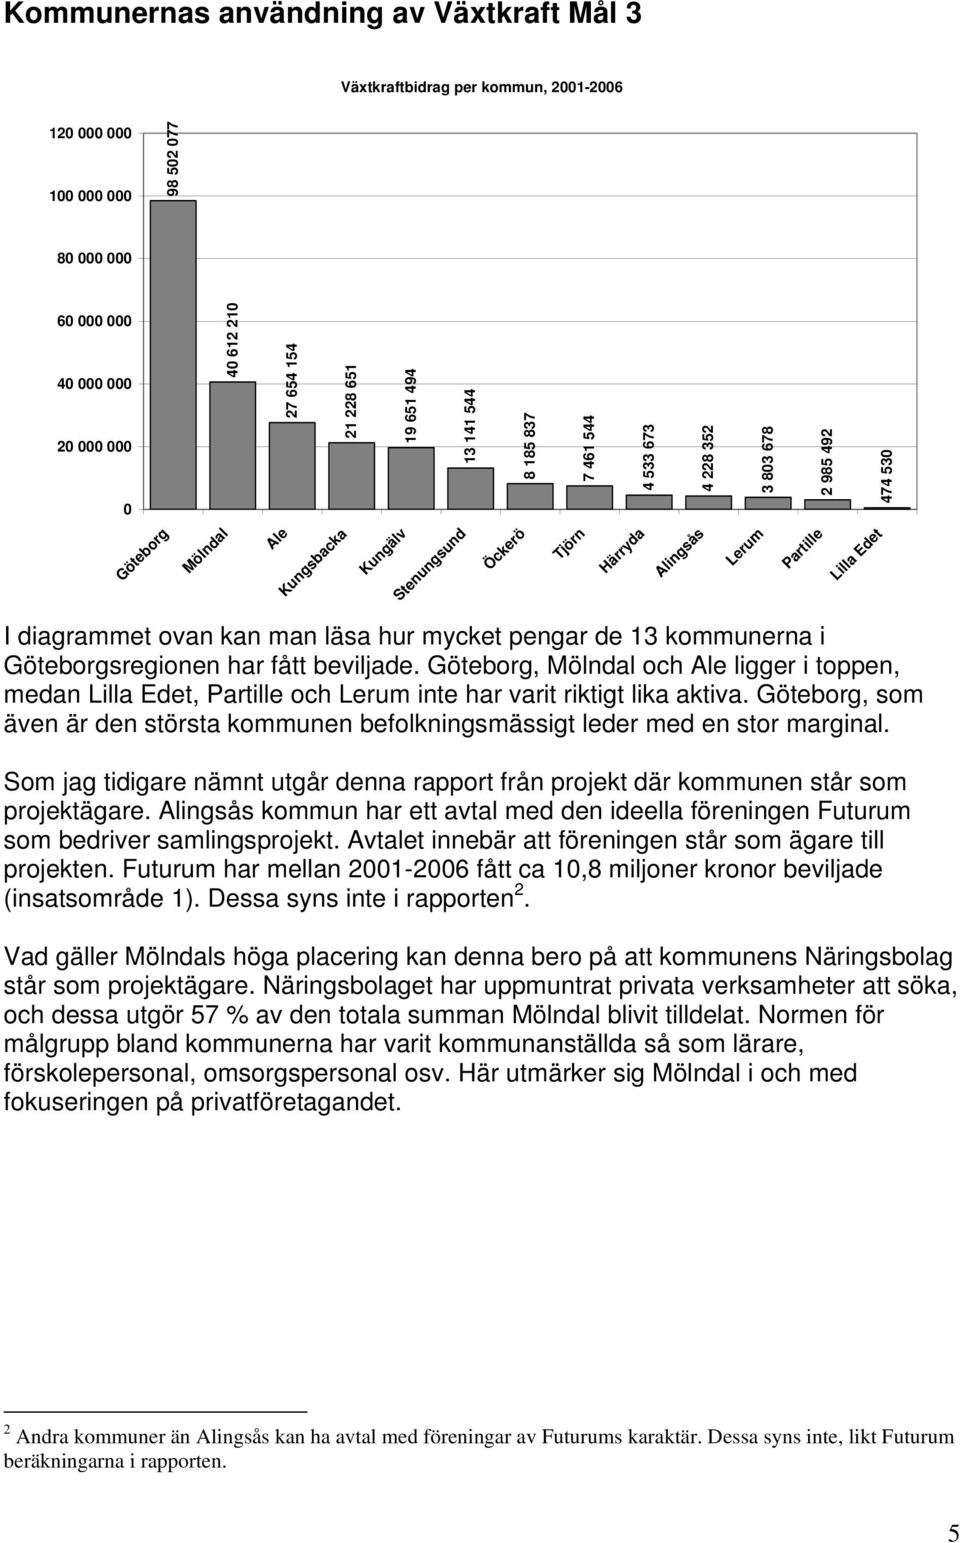 diagrammet ovan kan man läsa hur mycket pengar de 13 kommunerna i Göteborgsregionen har fått beviljade.